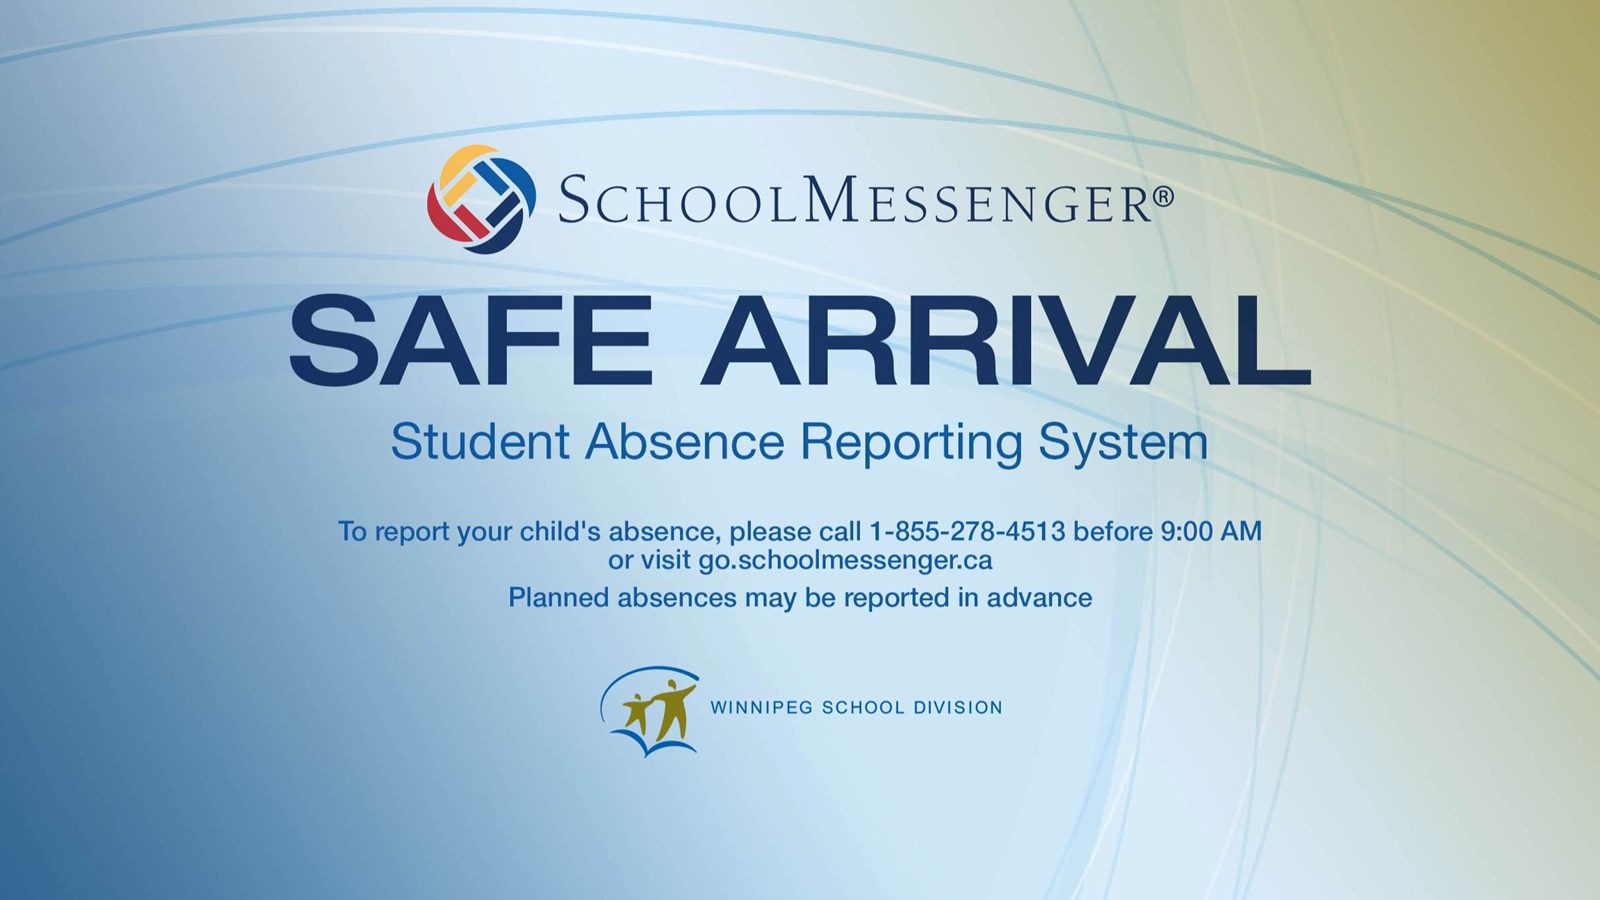 SAFE ARRIVAL / SCHOOL MESSENGER